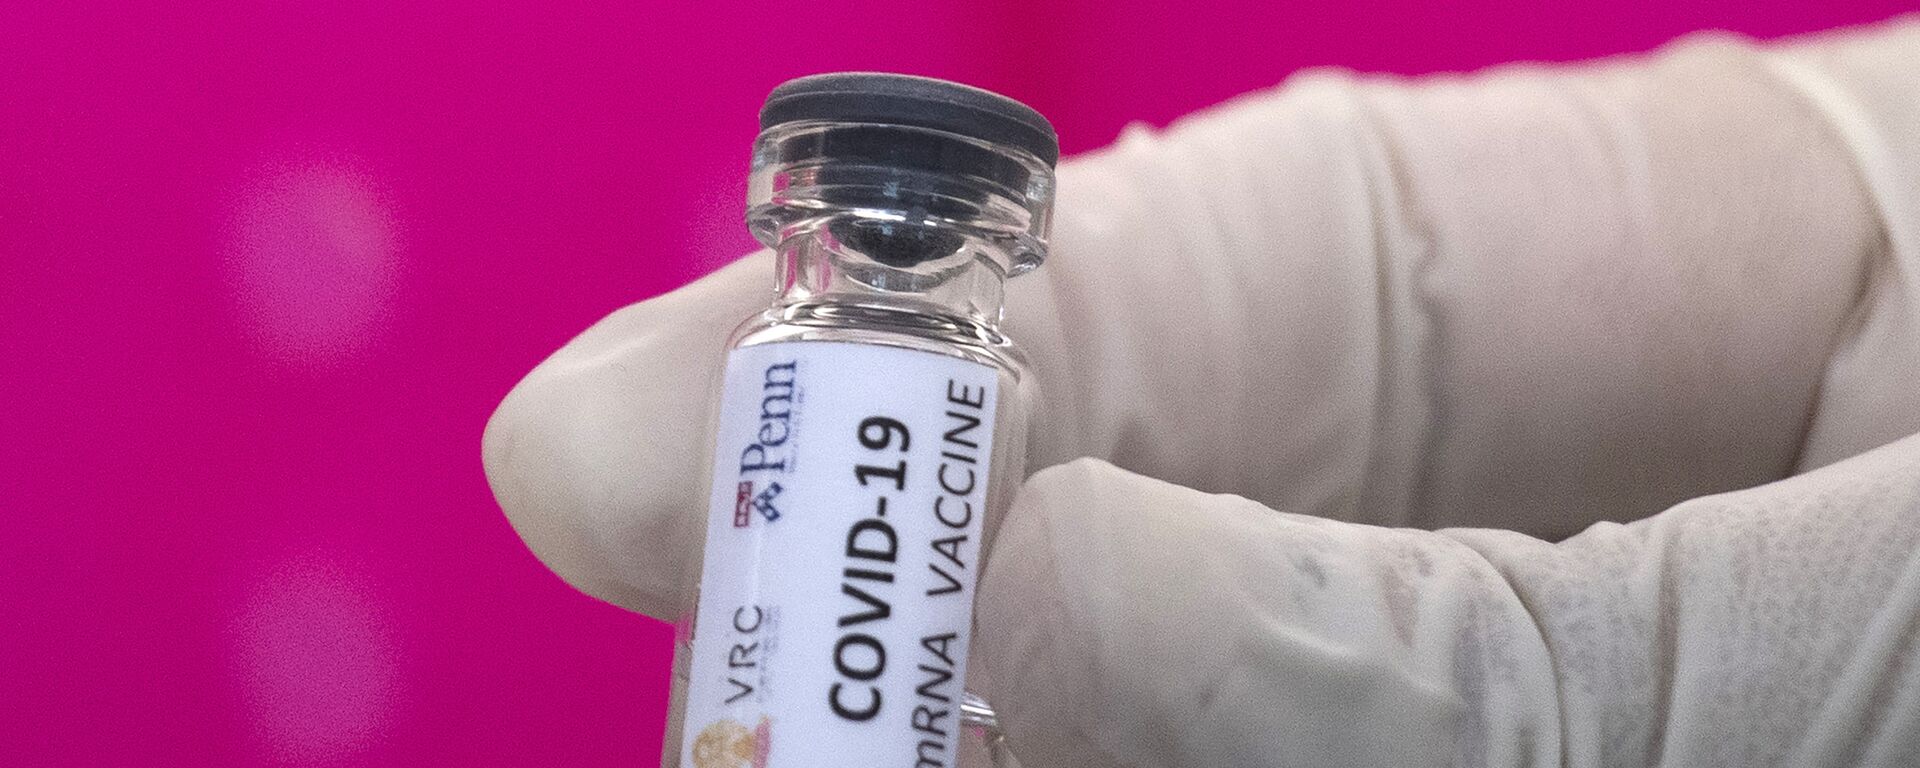 Вакцина от COVID-19 во время тестирования в исследовательском центре вакцин - Sputnik Армения, 1920, 10.09.2020